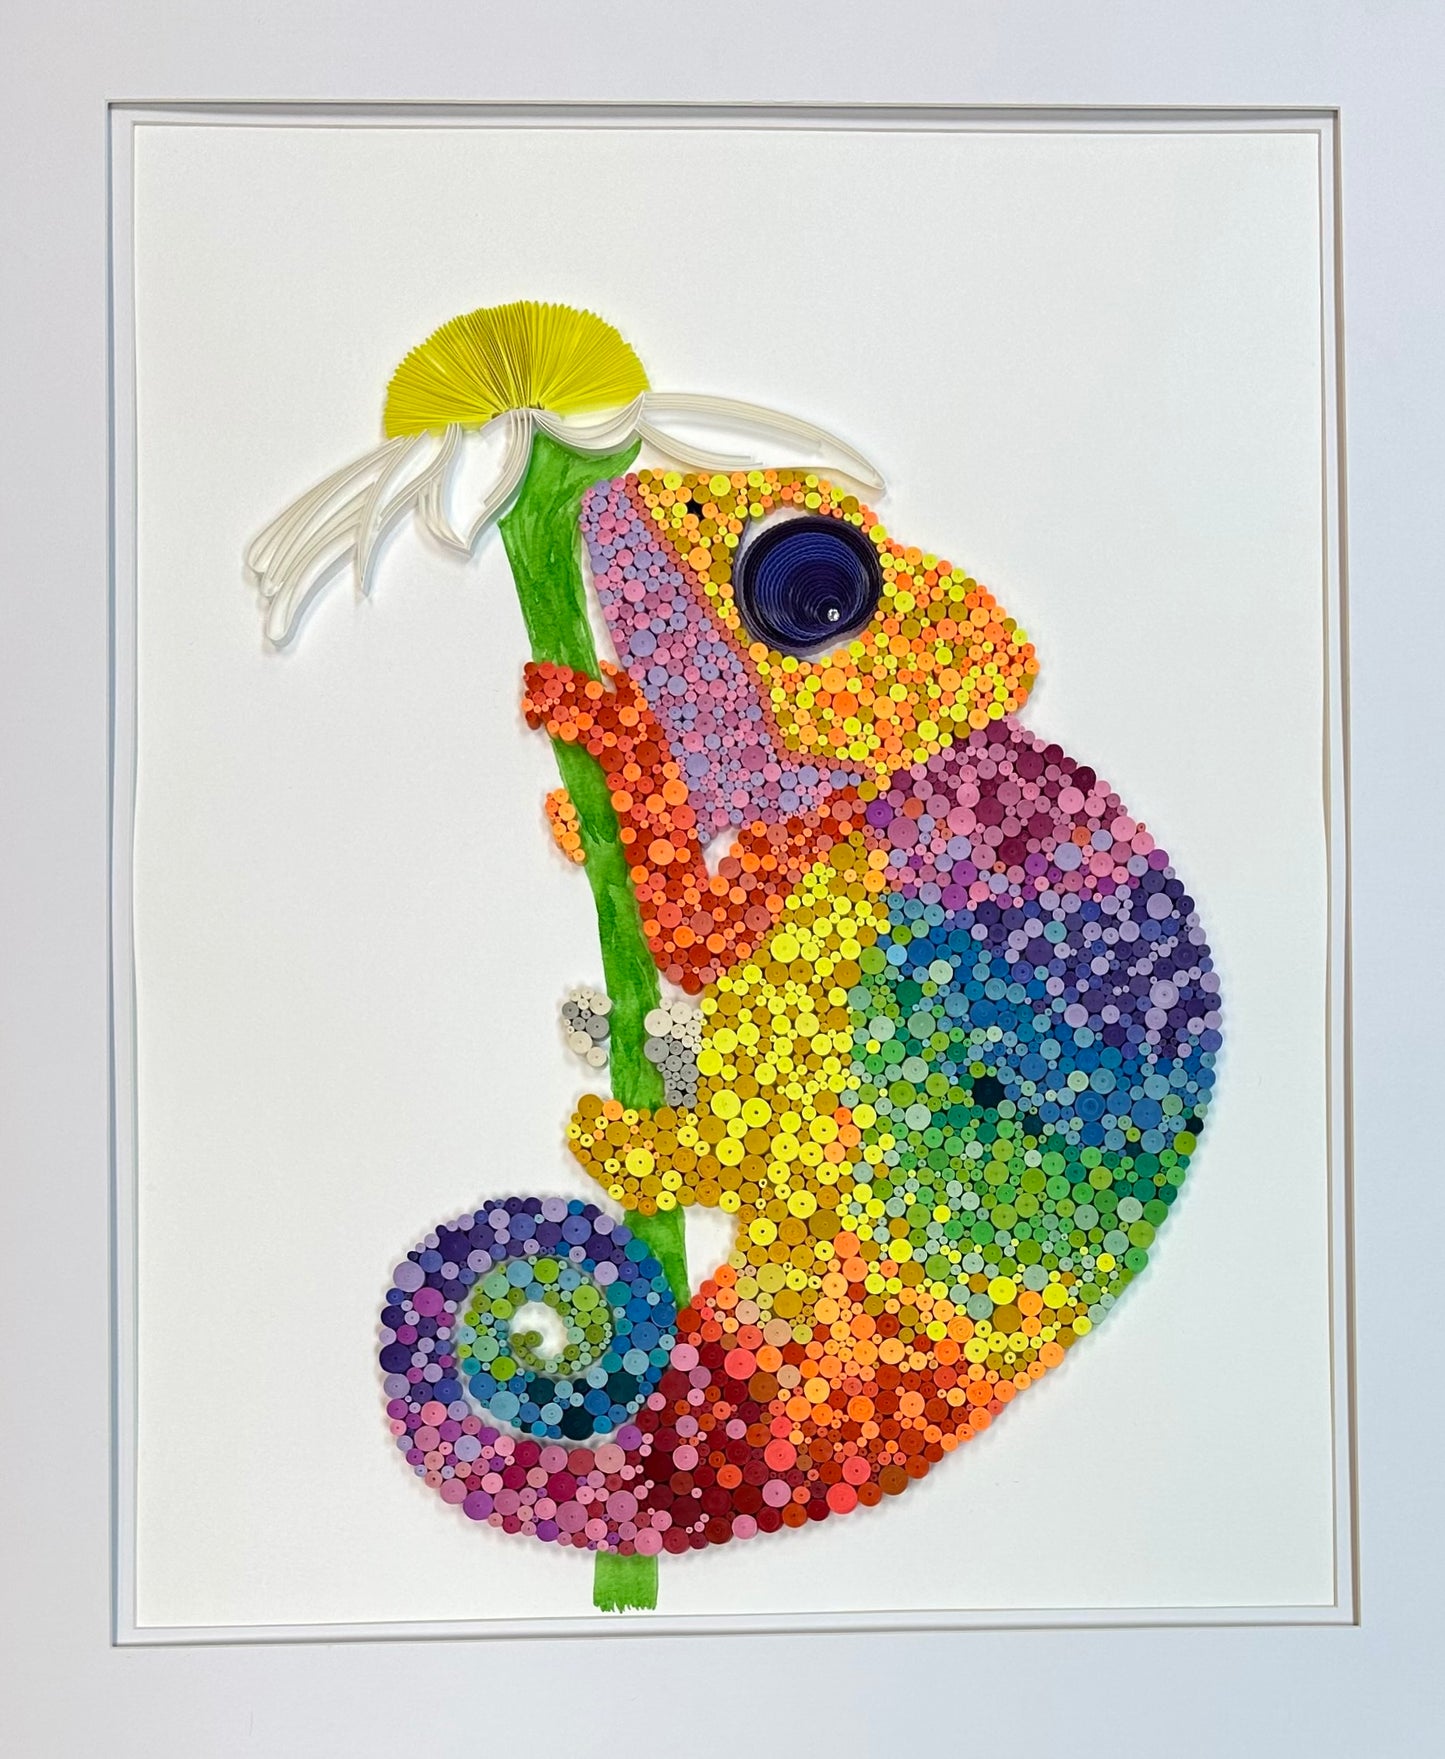 Rainbow Chameleon